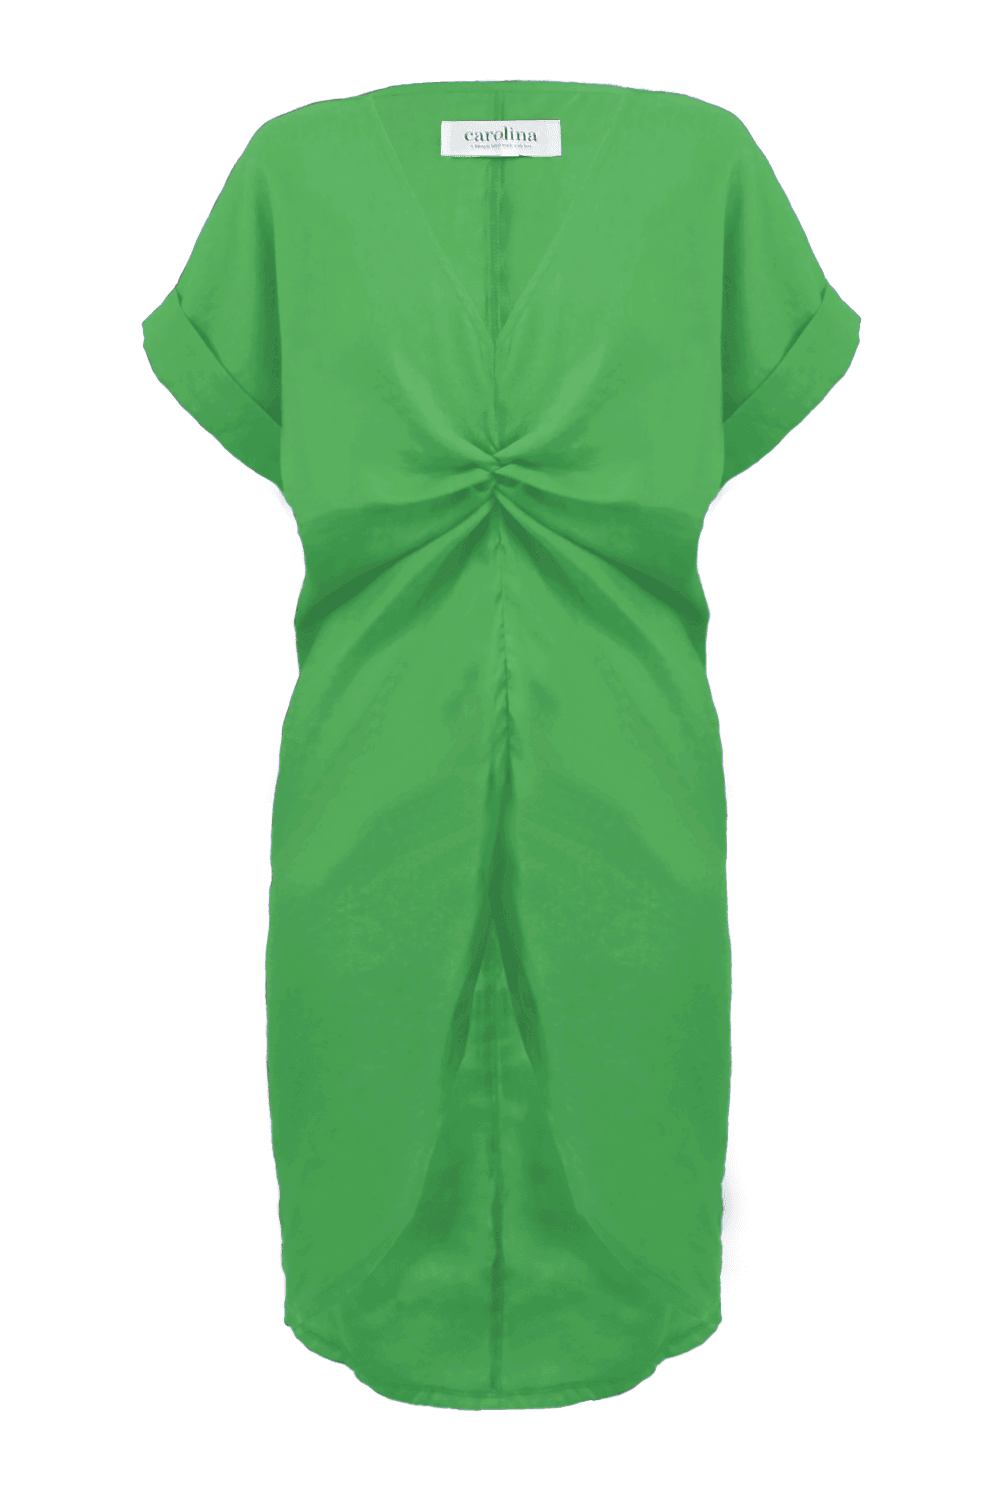 Saria Cuffed Short Sleeve Linen Dress Emerald Dress